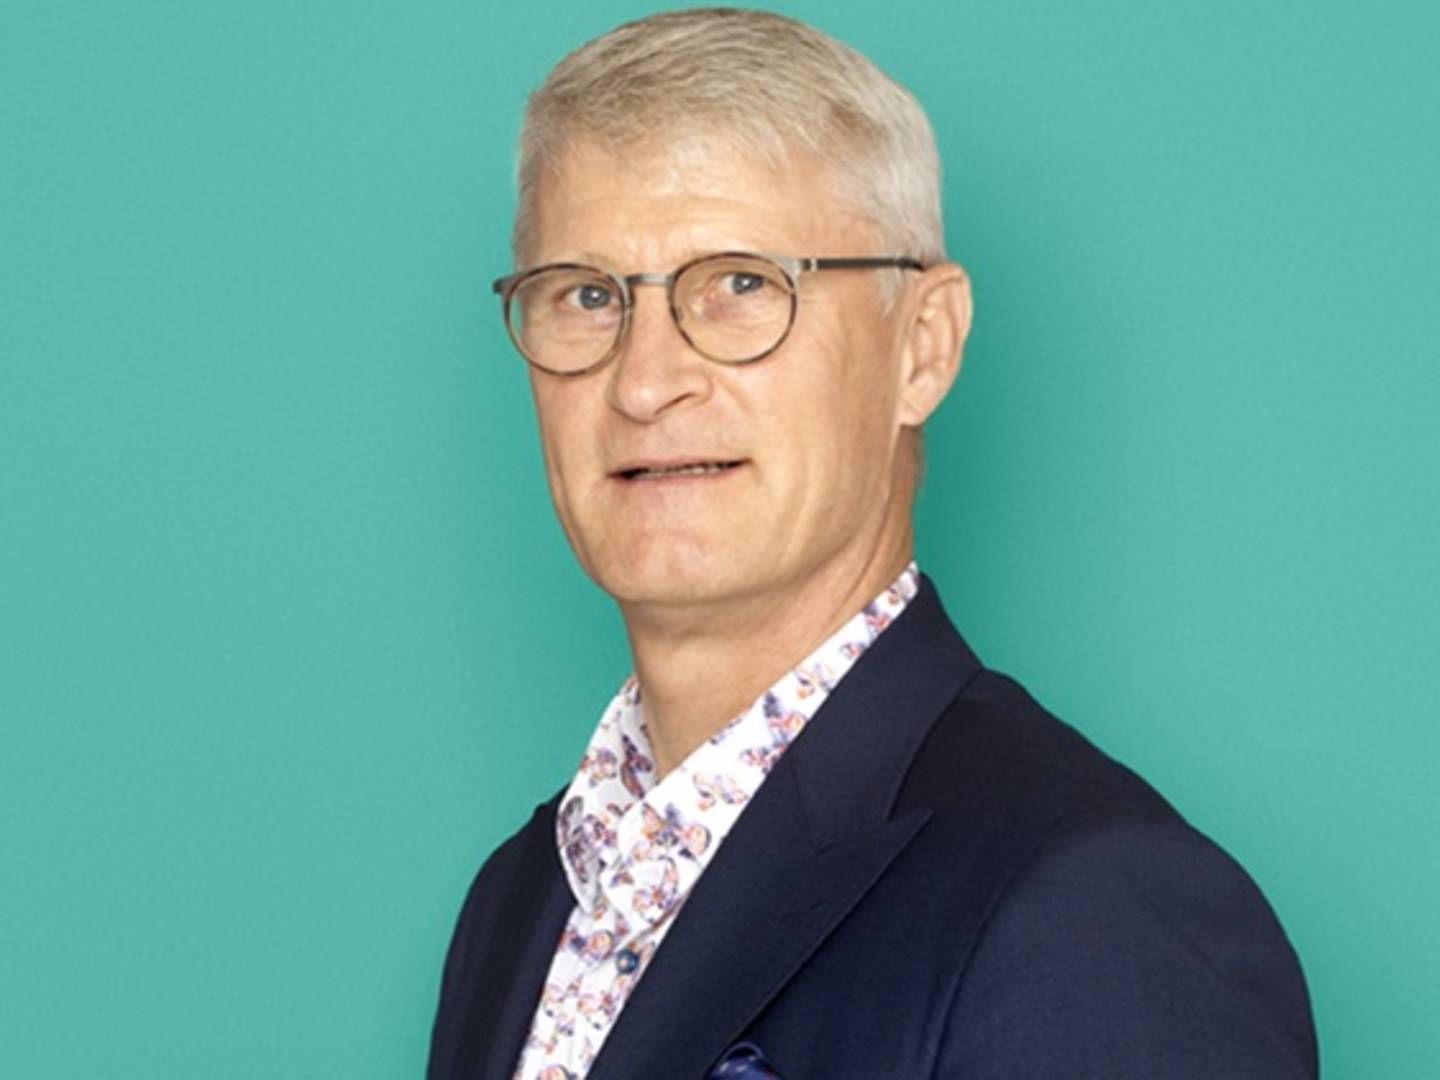 Carsten Ceutz tilbragte knap 20 år hos Bech-Bruun inden skiftet til Kirk Larsen & Ascanius i 2019. | Foto: Steen Brogaard